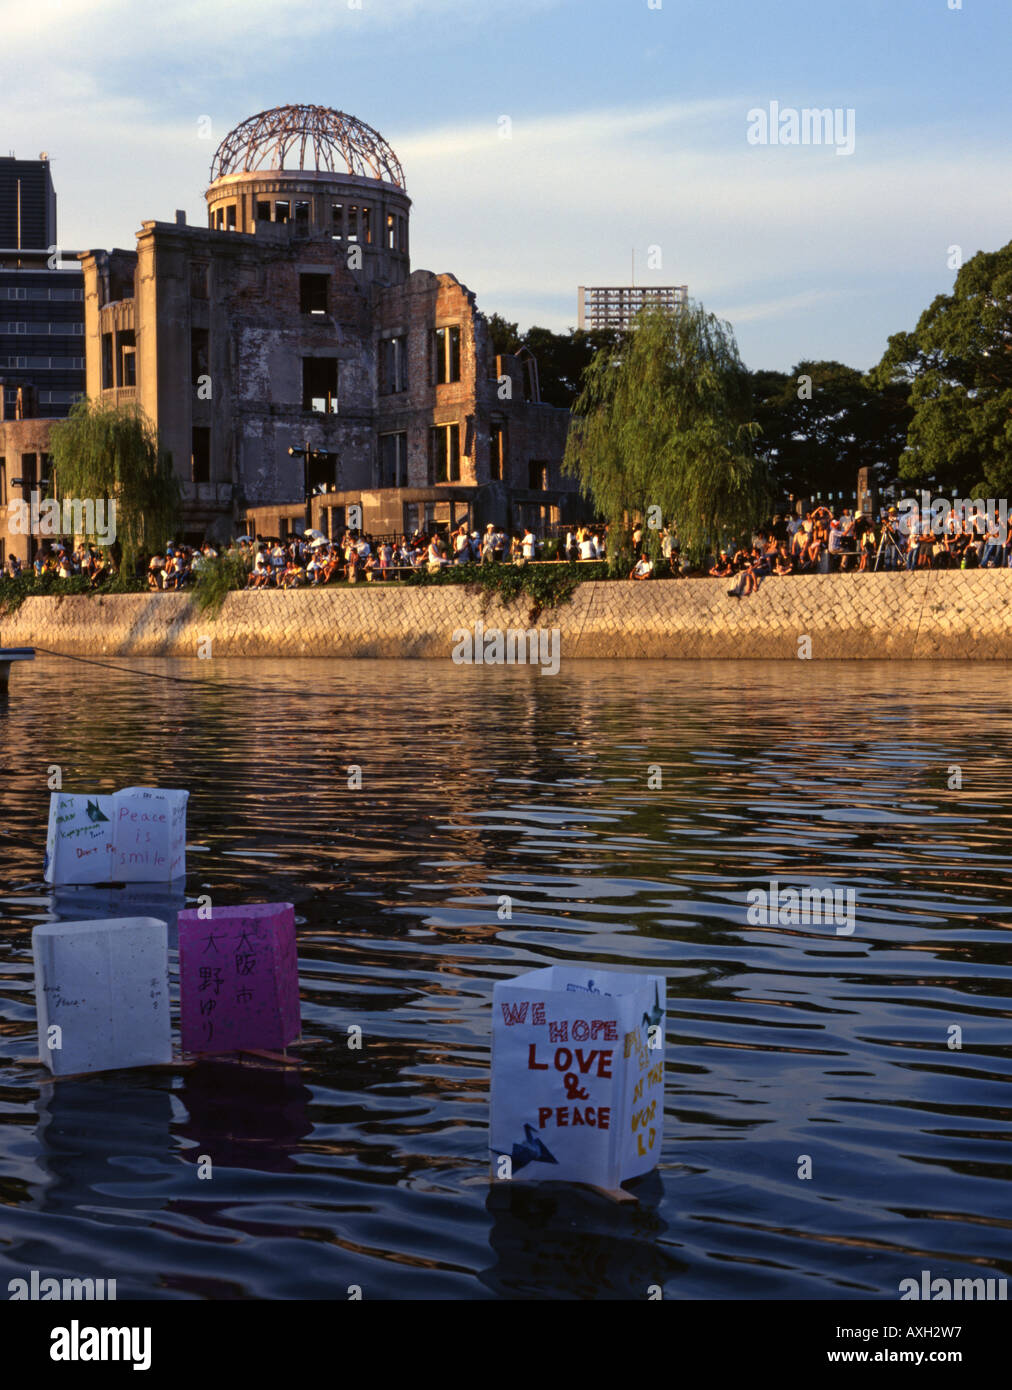 Lanternes flottantes sur août 6th, Hiroshima, Japon. Placé dans la rivière à côté du Dôme de la Bombe Atomique ( site du patrimoine mondial de l'UNESCO. ) Banque D'Images